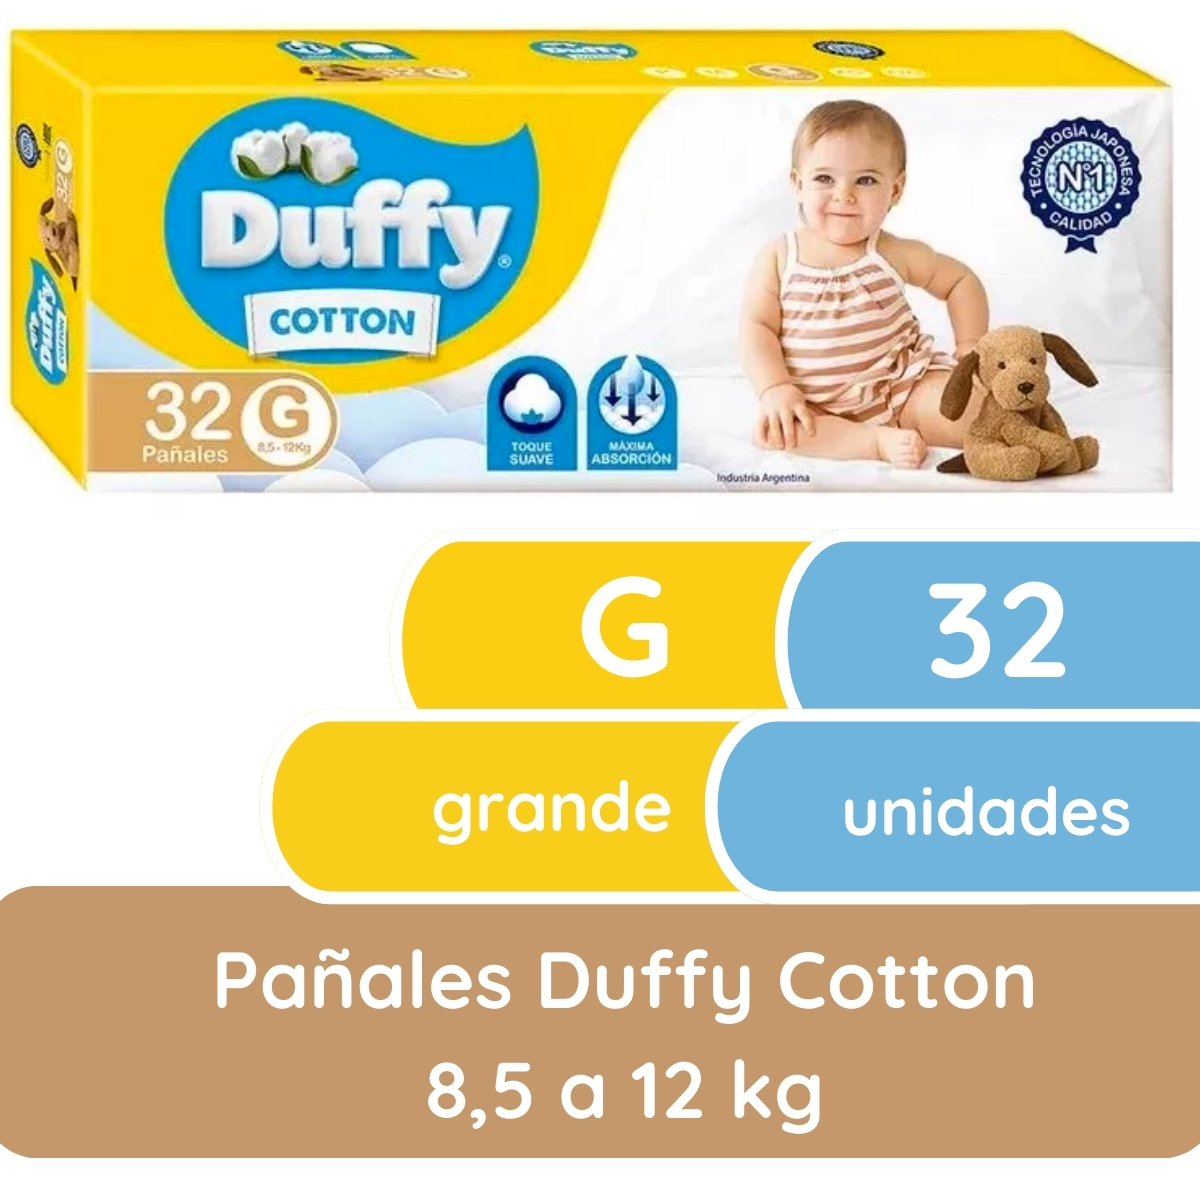 Miniatura 1 de 4 de Pañales Duffy Cotton G x 32 unidades